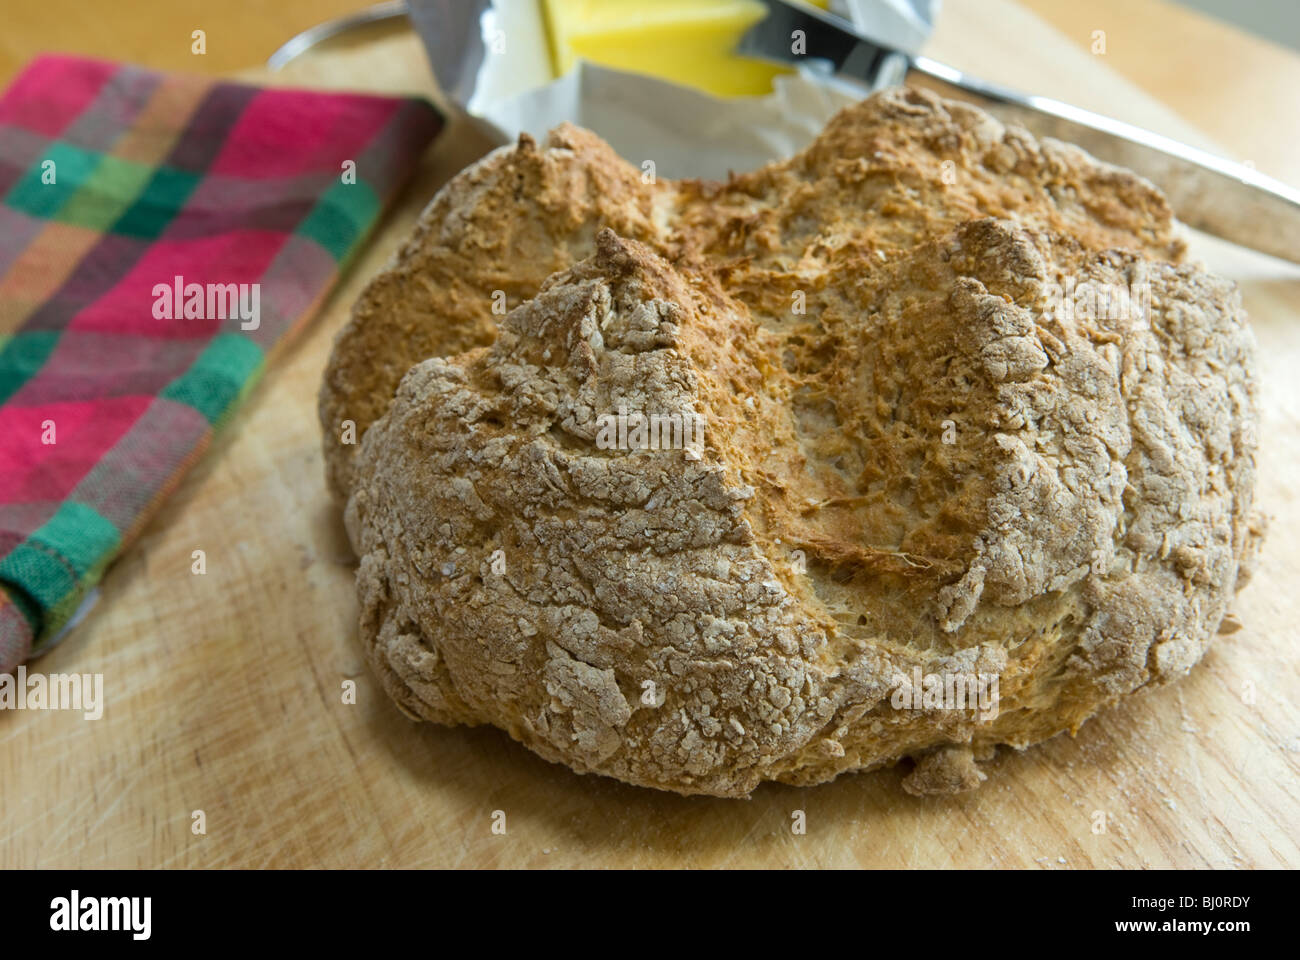 Irish Soda Bread, freshly baked. Stock Photo